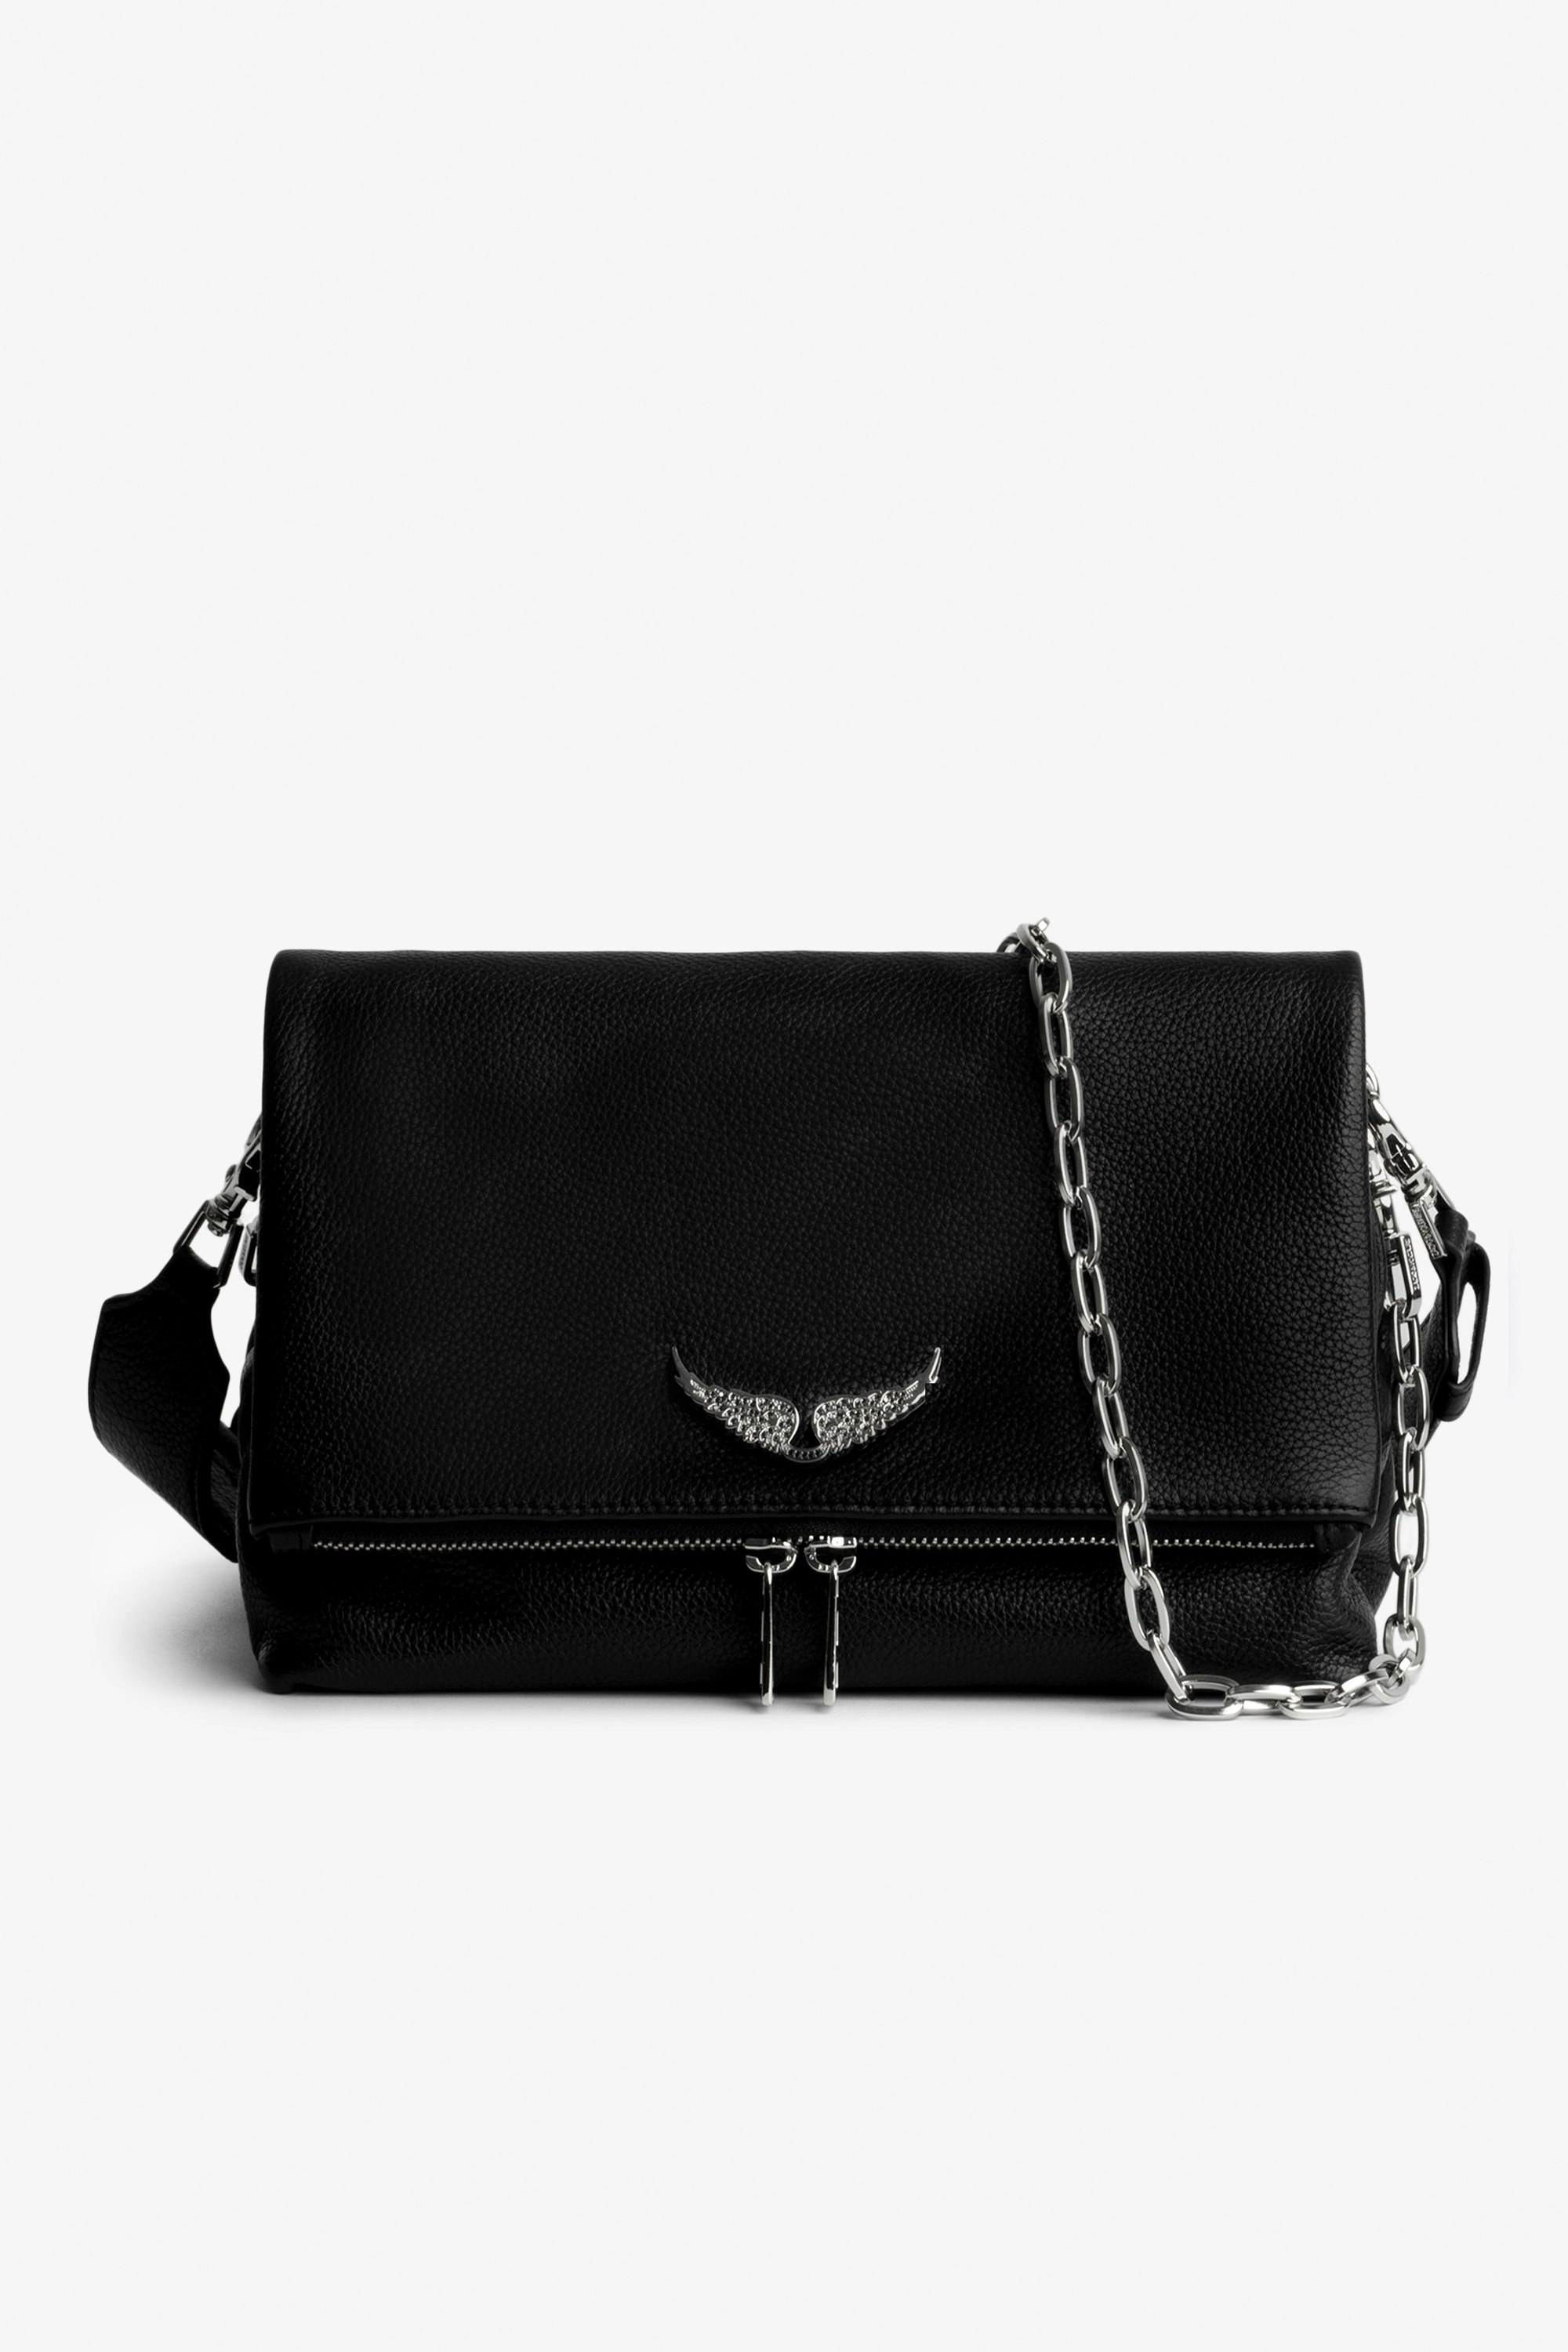 Tasche Rocky Swing Your Wings - Damentasche Rocky aus schwarzem Leder mit silberfarbener Metallkette